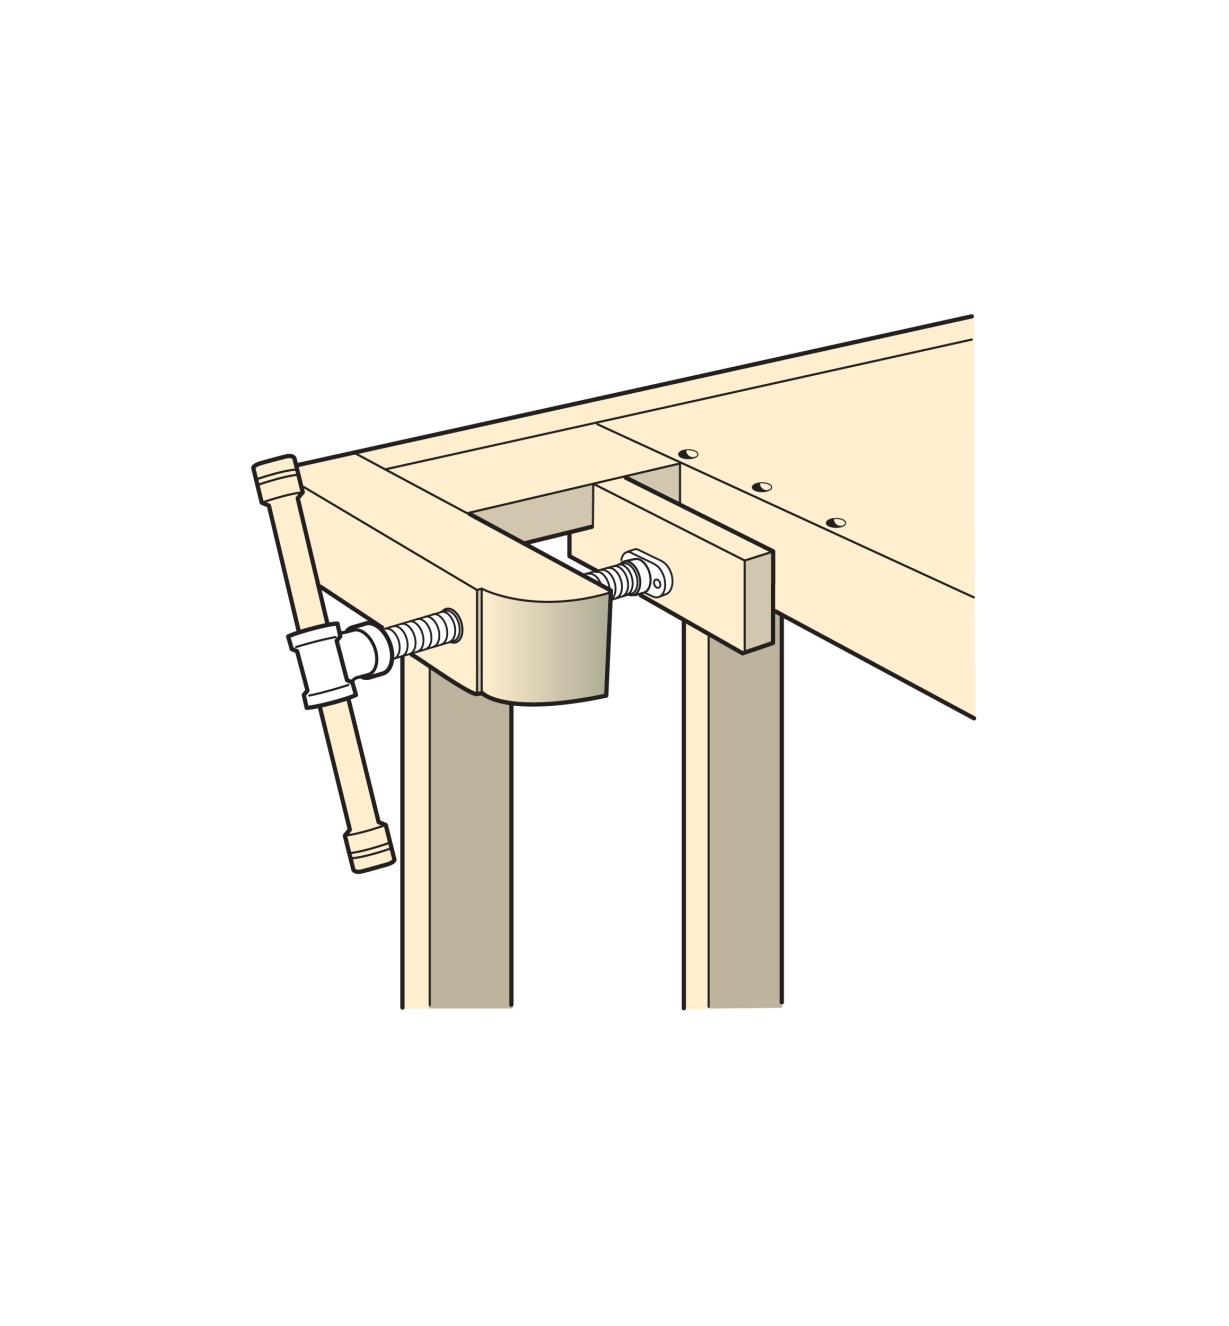 Illustration of Shoulder-Vise Screw installed in a workbench